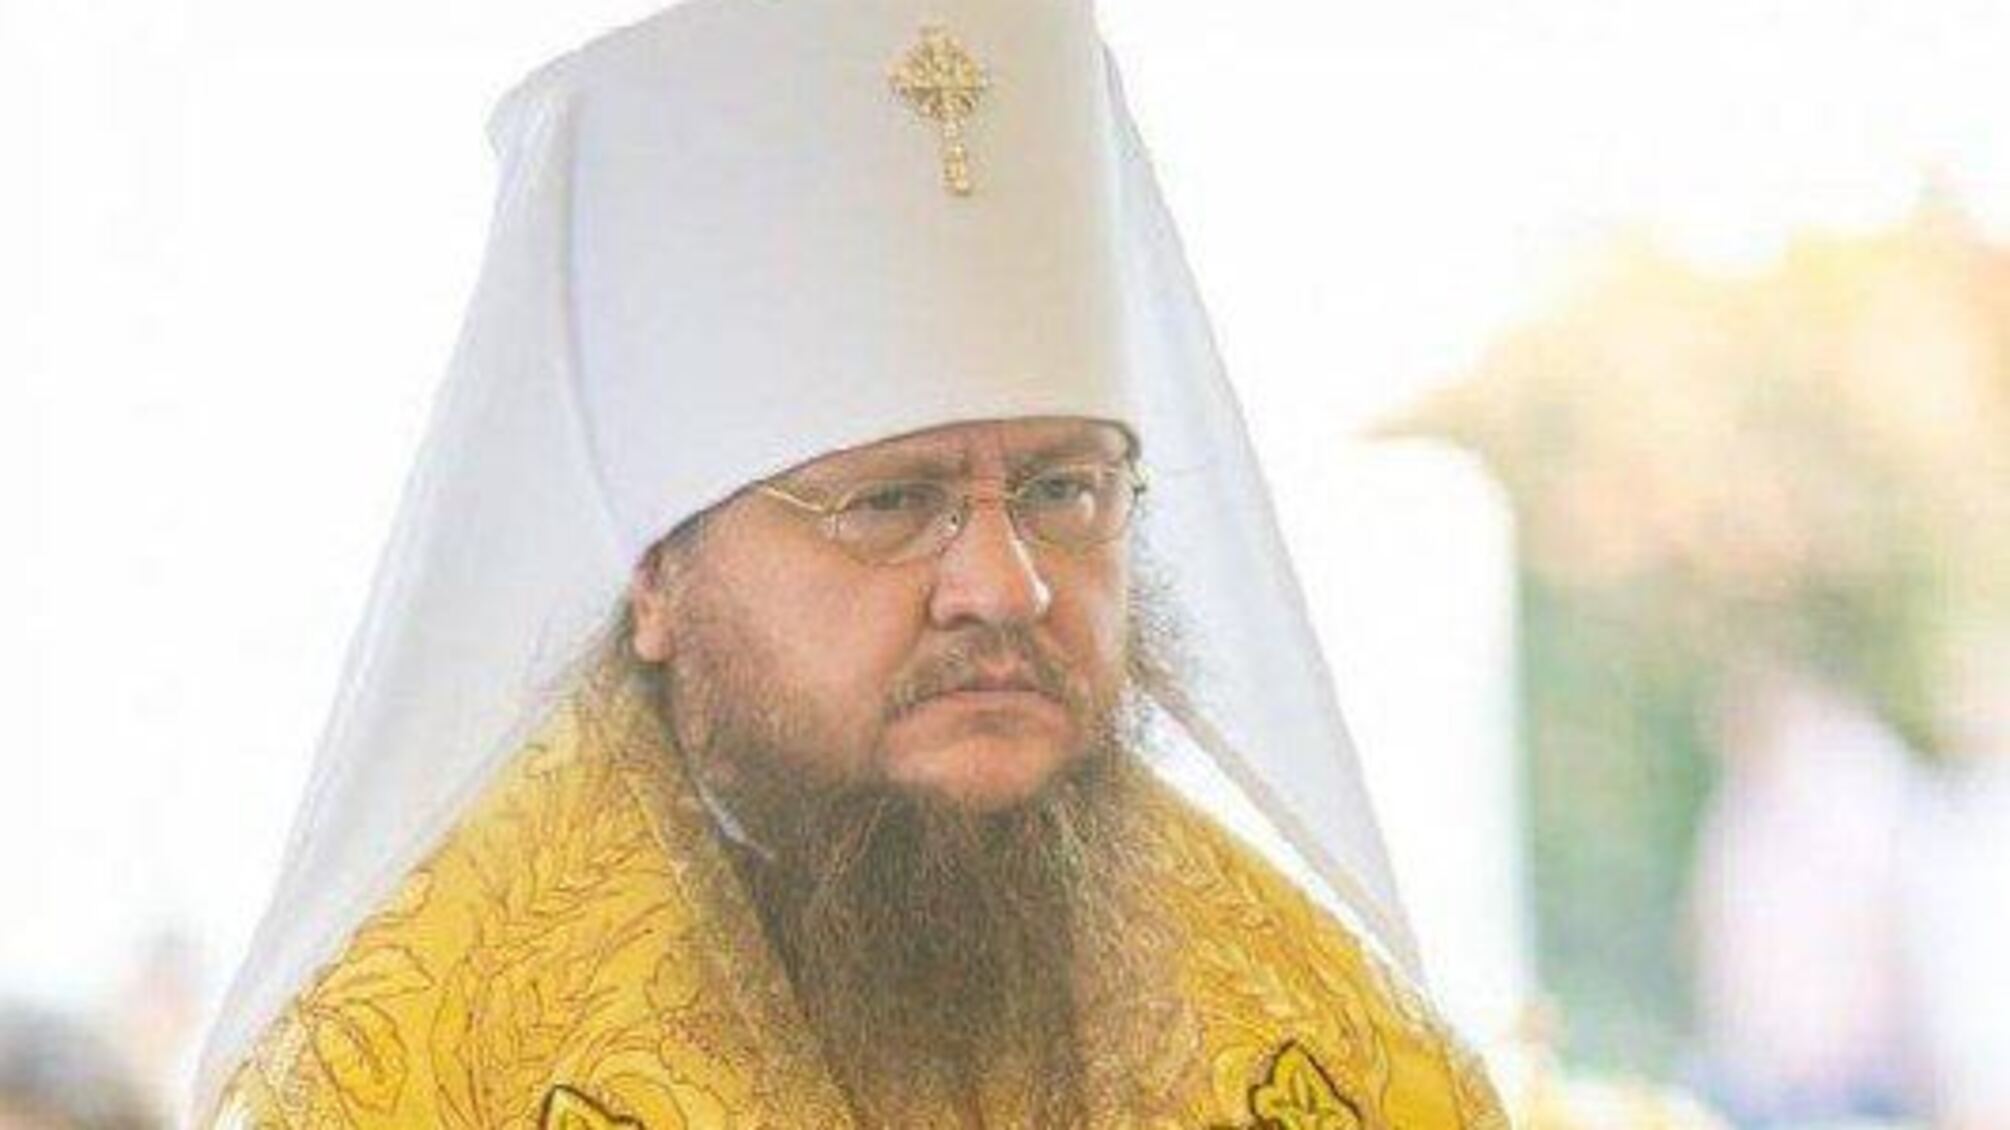 СБУ провела обыски у руководителя Черкасской епархии, получившего подозрение за разжигание межрелигиозной розни